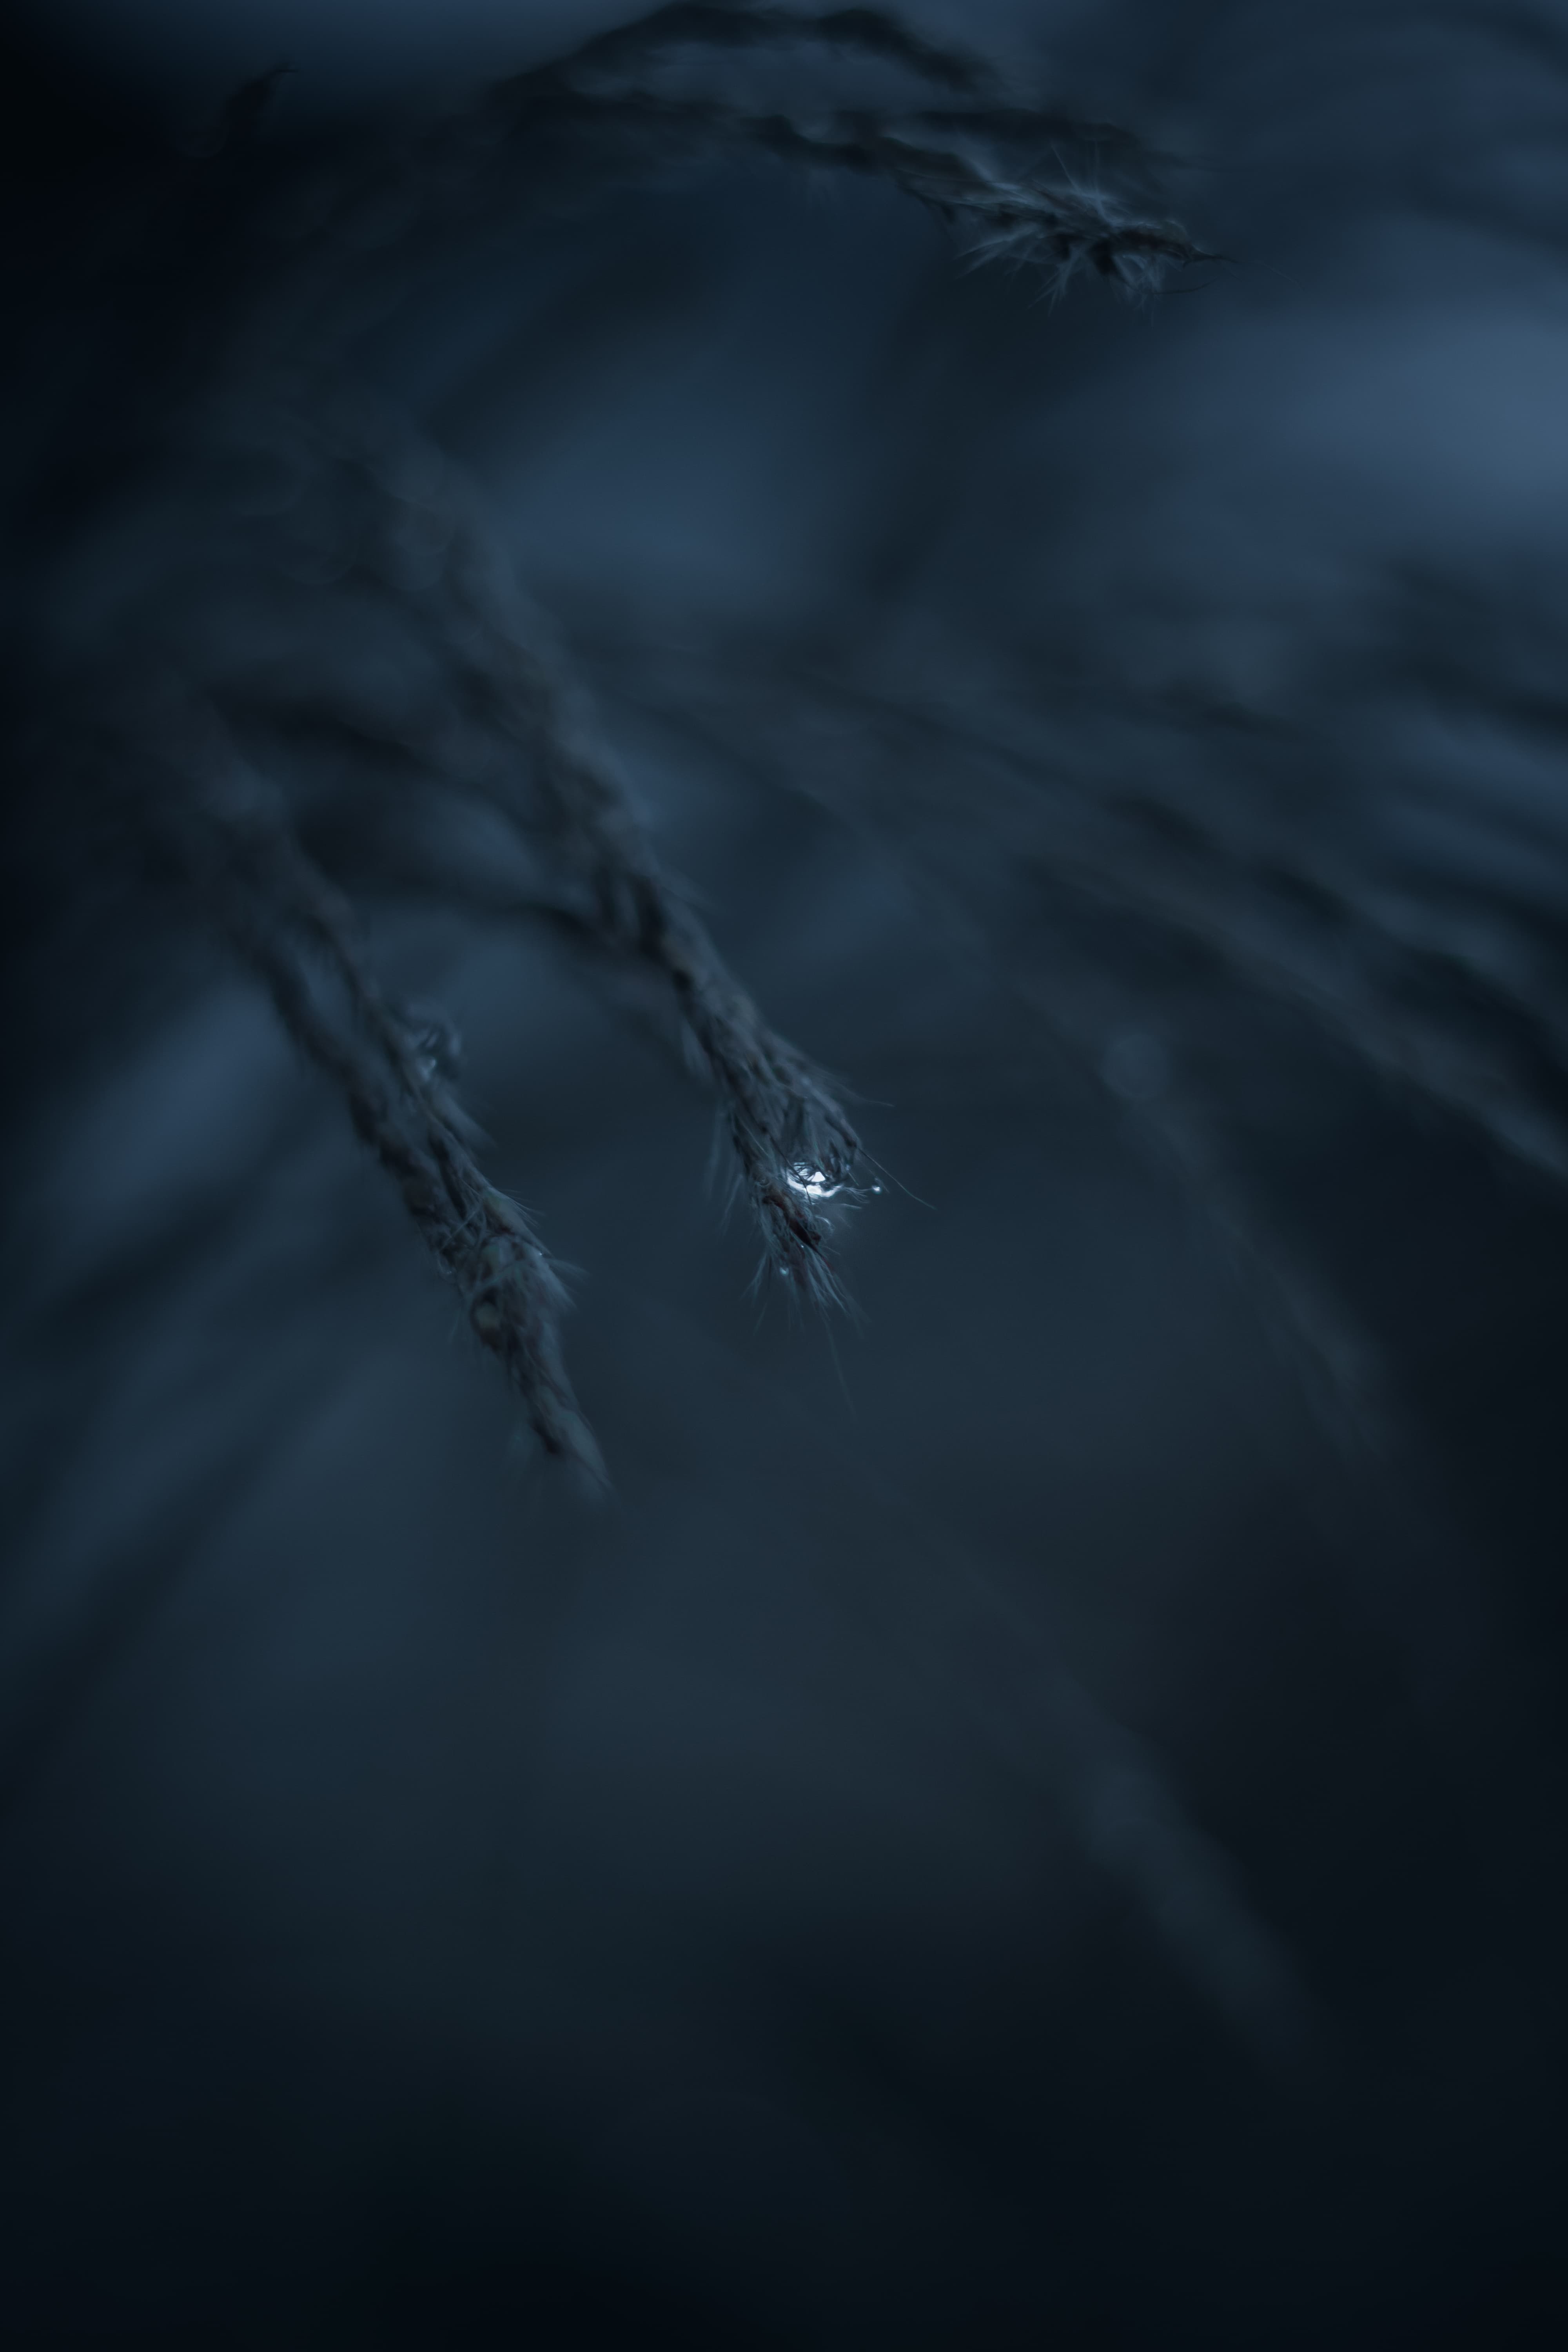  Wassertropfen Hintergrundbild 4000x6000. Kostenlose Bild: Graspflanzen, Wassertropfen, Tau, Regen, Wasser, abstrakt, Dunkel, Natur, verwischen, Monochrom